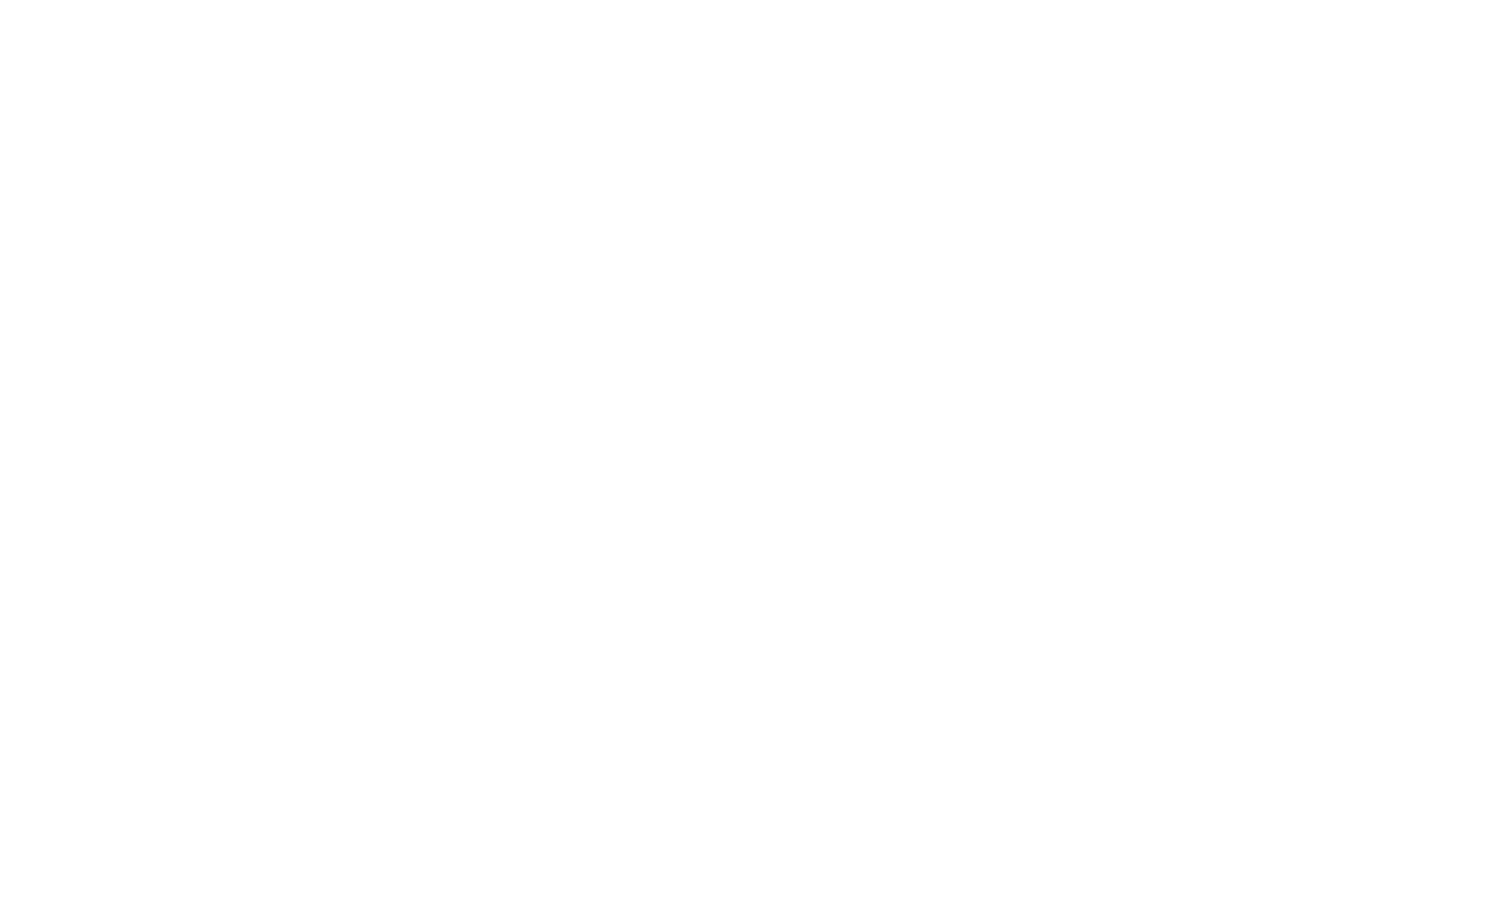 LASSEN CO GROWN